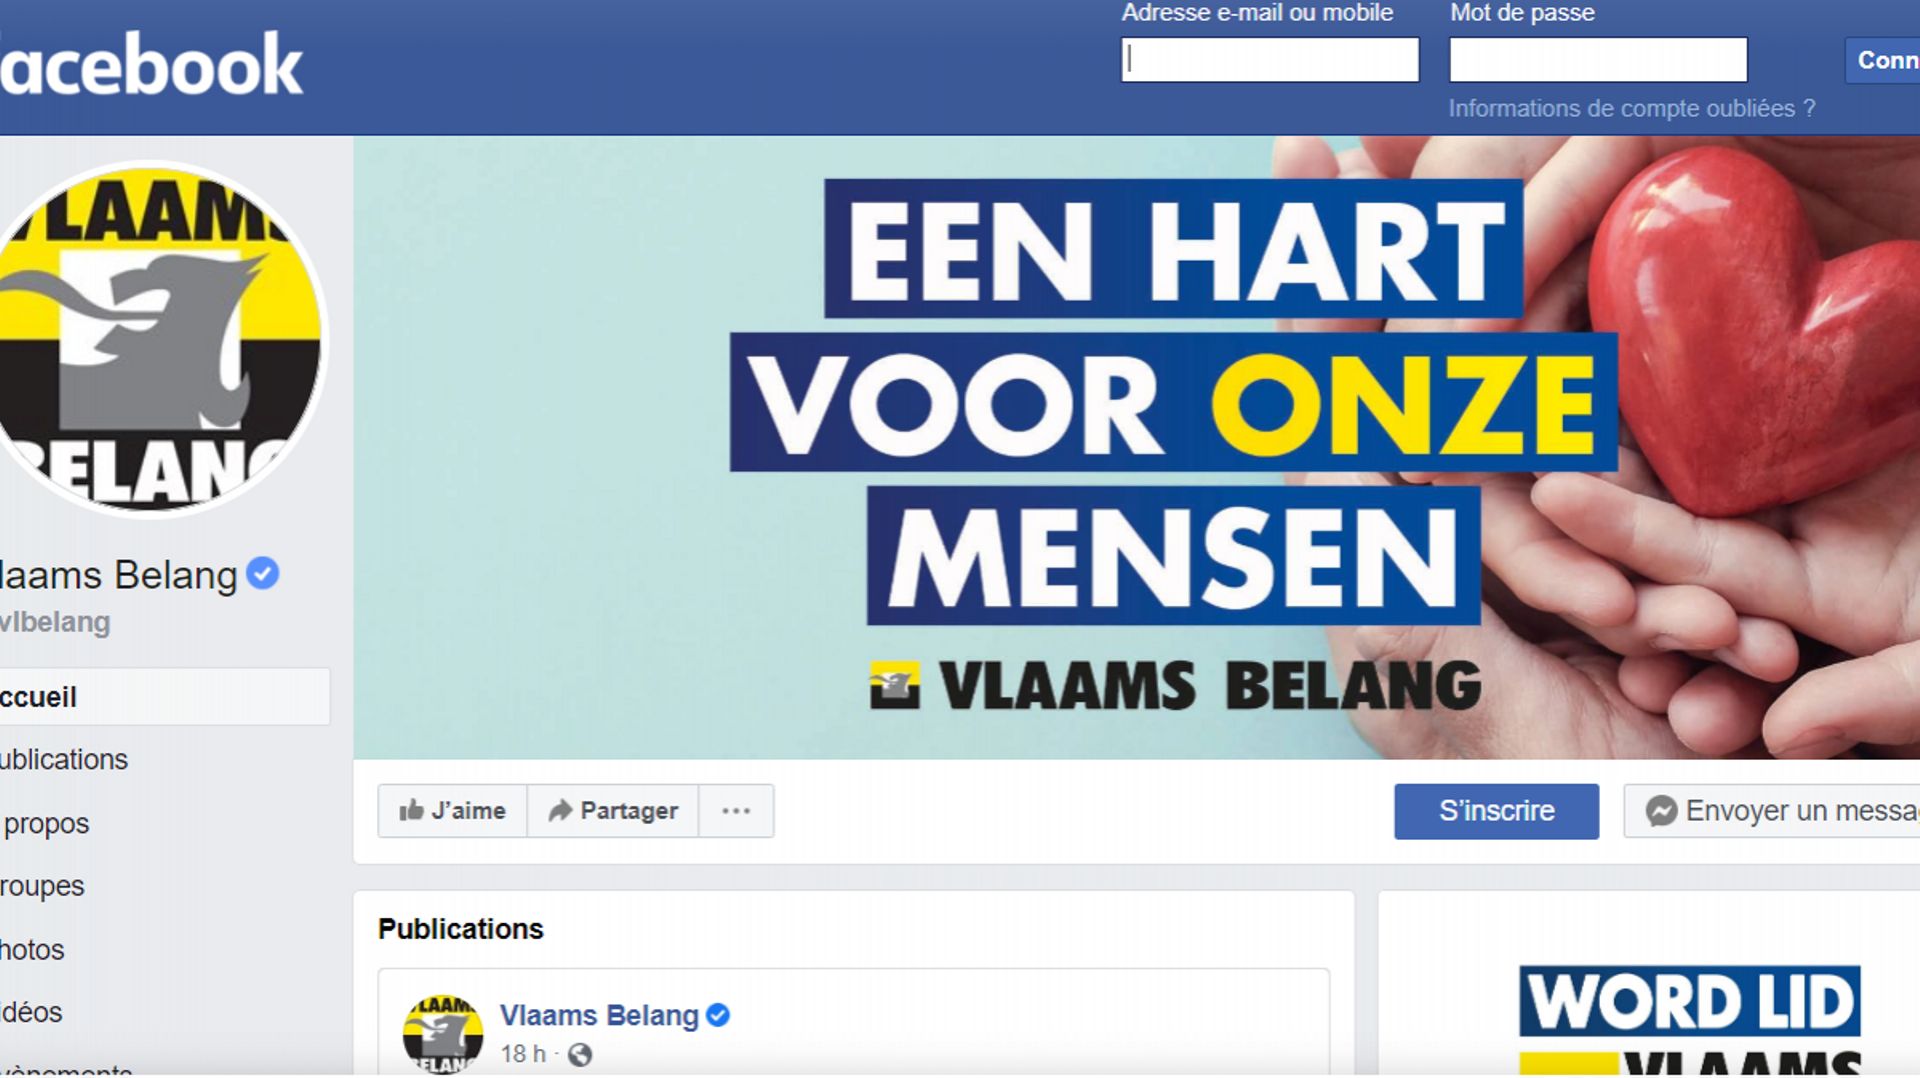 En juin, le Vlaams Belang a dépensé plus de 150.000 euros en publicités Facebook